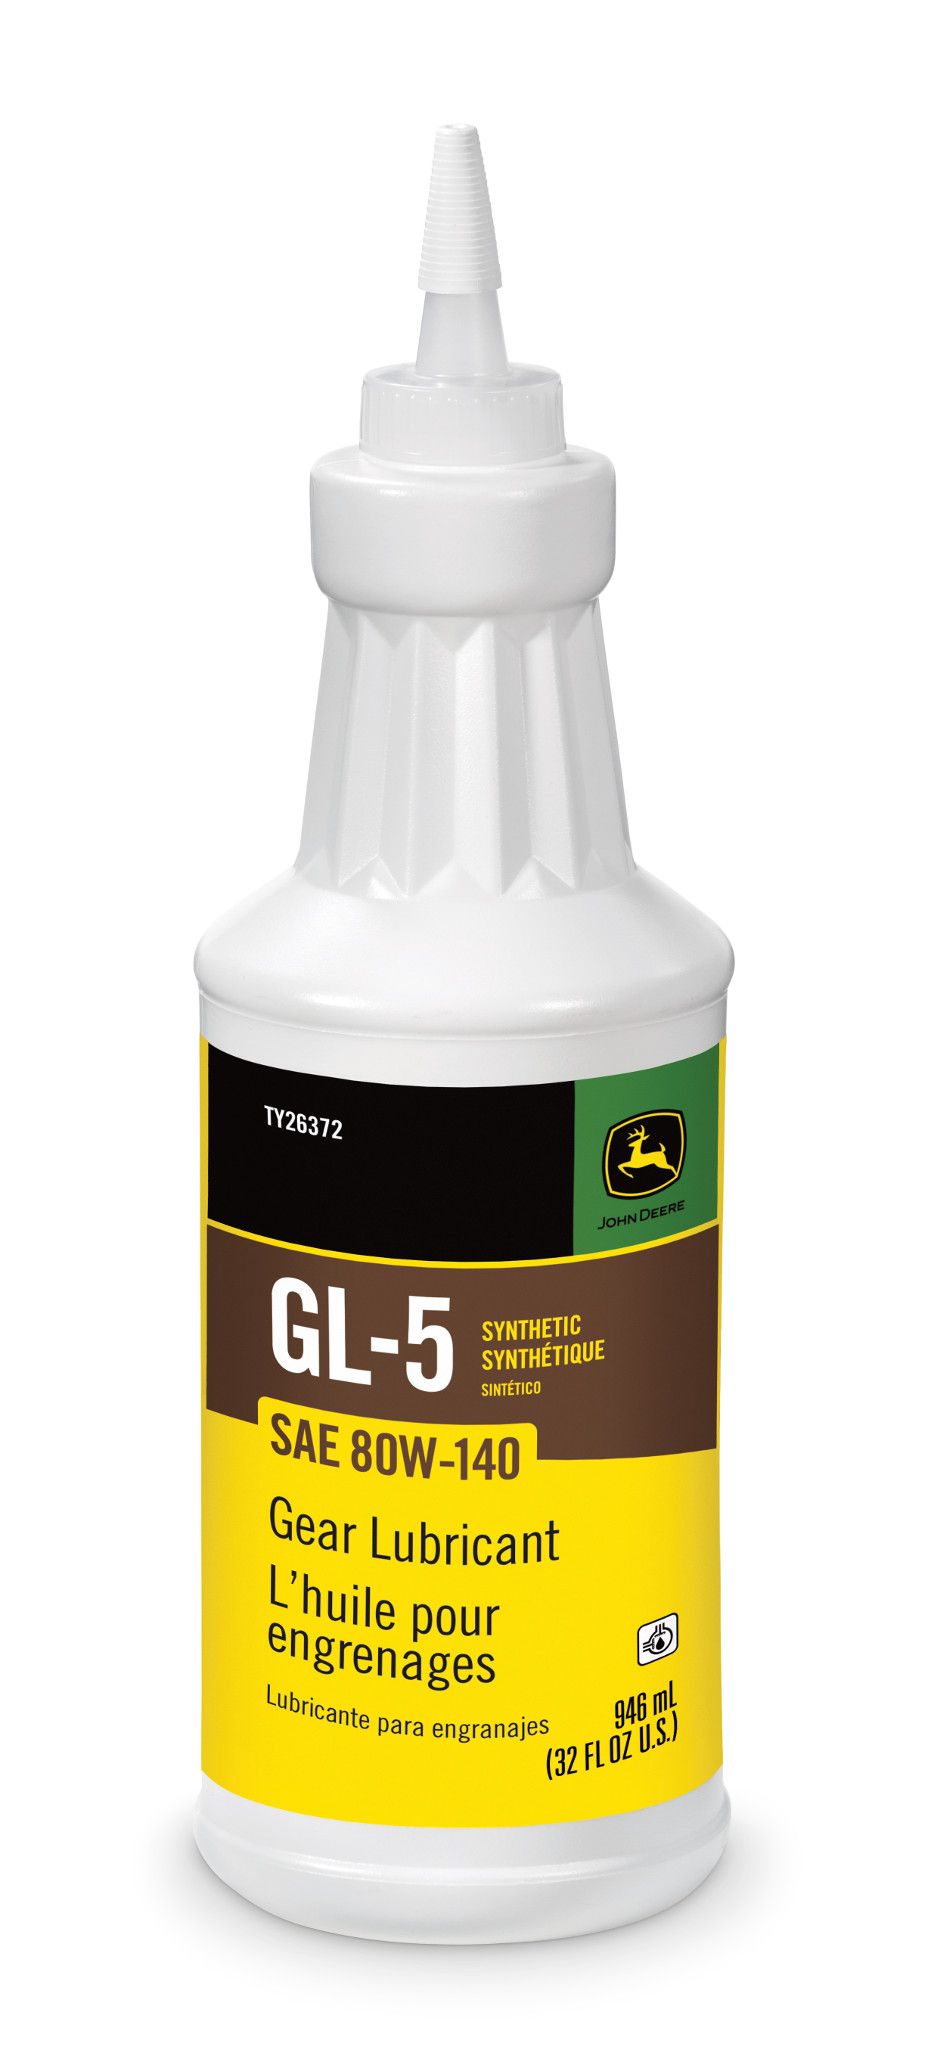 GL-5 Gear Lubricant - 80W - TY26372